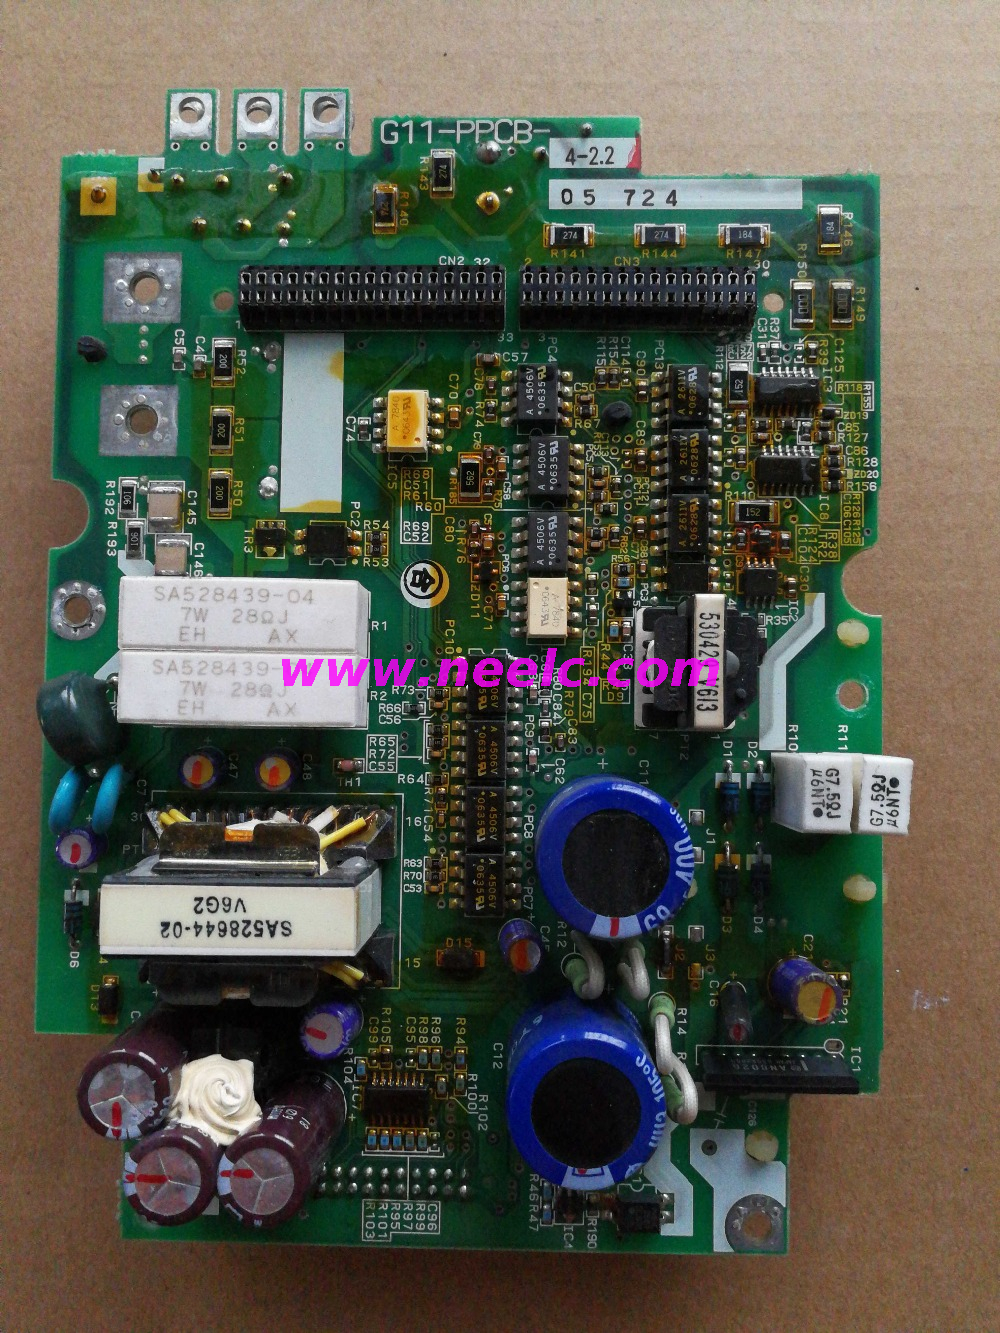 G11-PPCB-4-2.2 SA528530-07 G11-2.2KW power drive board